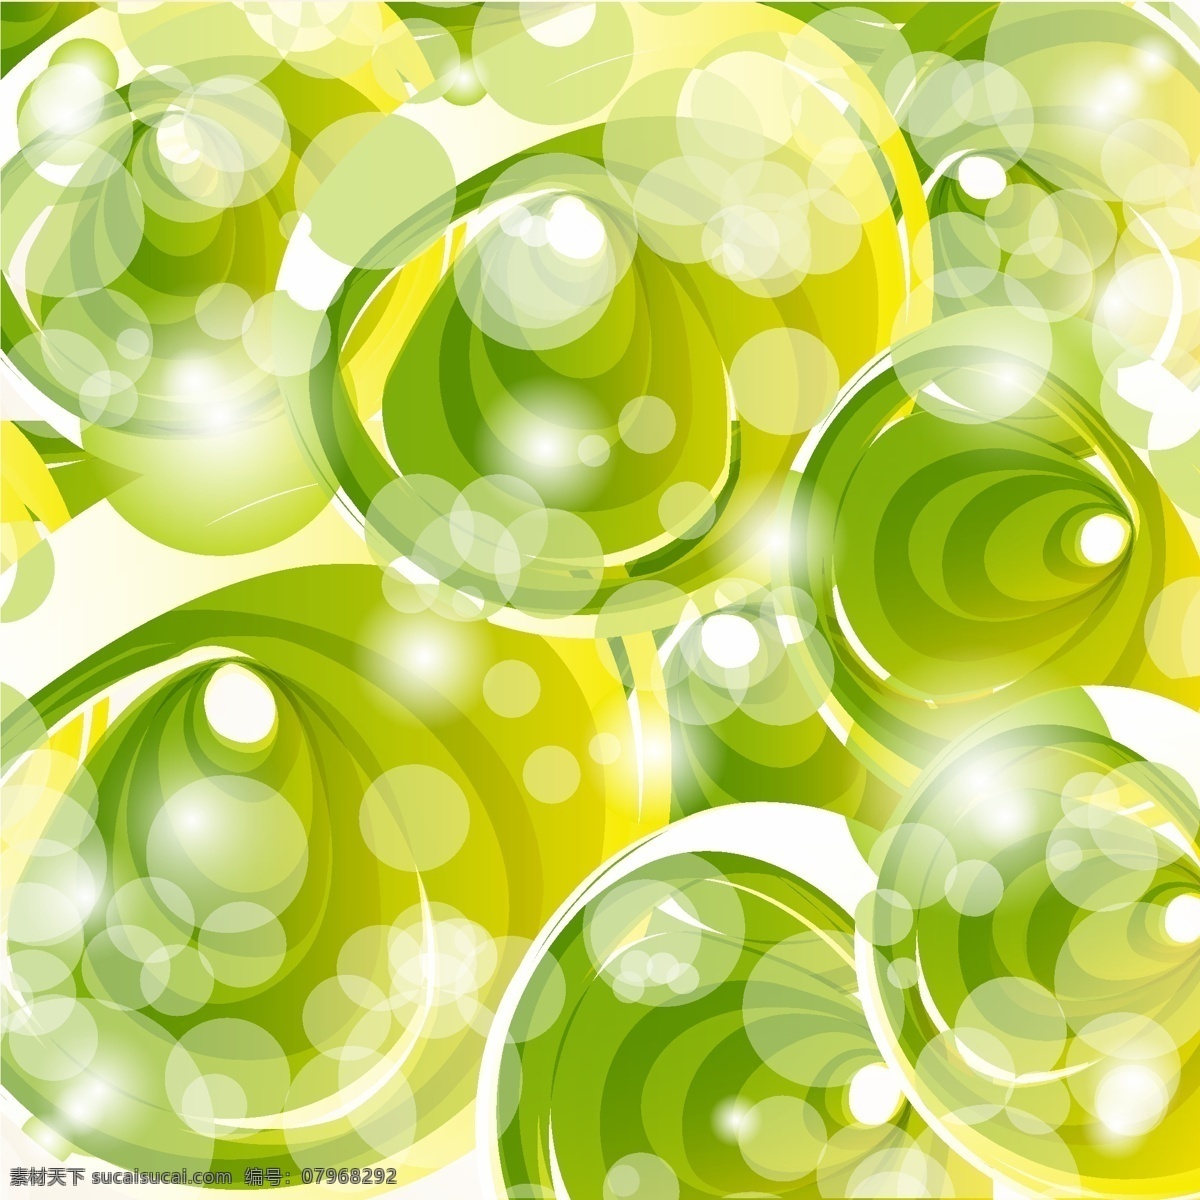 绿色 梦幻 气泡 卡通 矢量 矢量素材 设计素材 背景素材